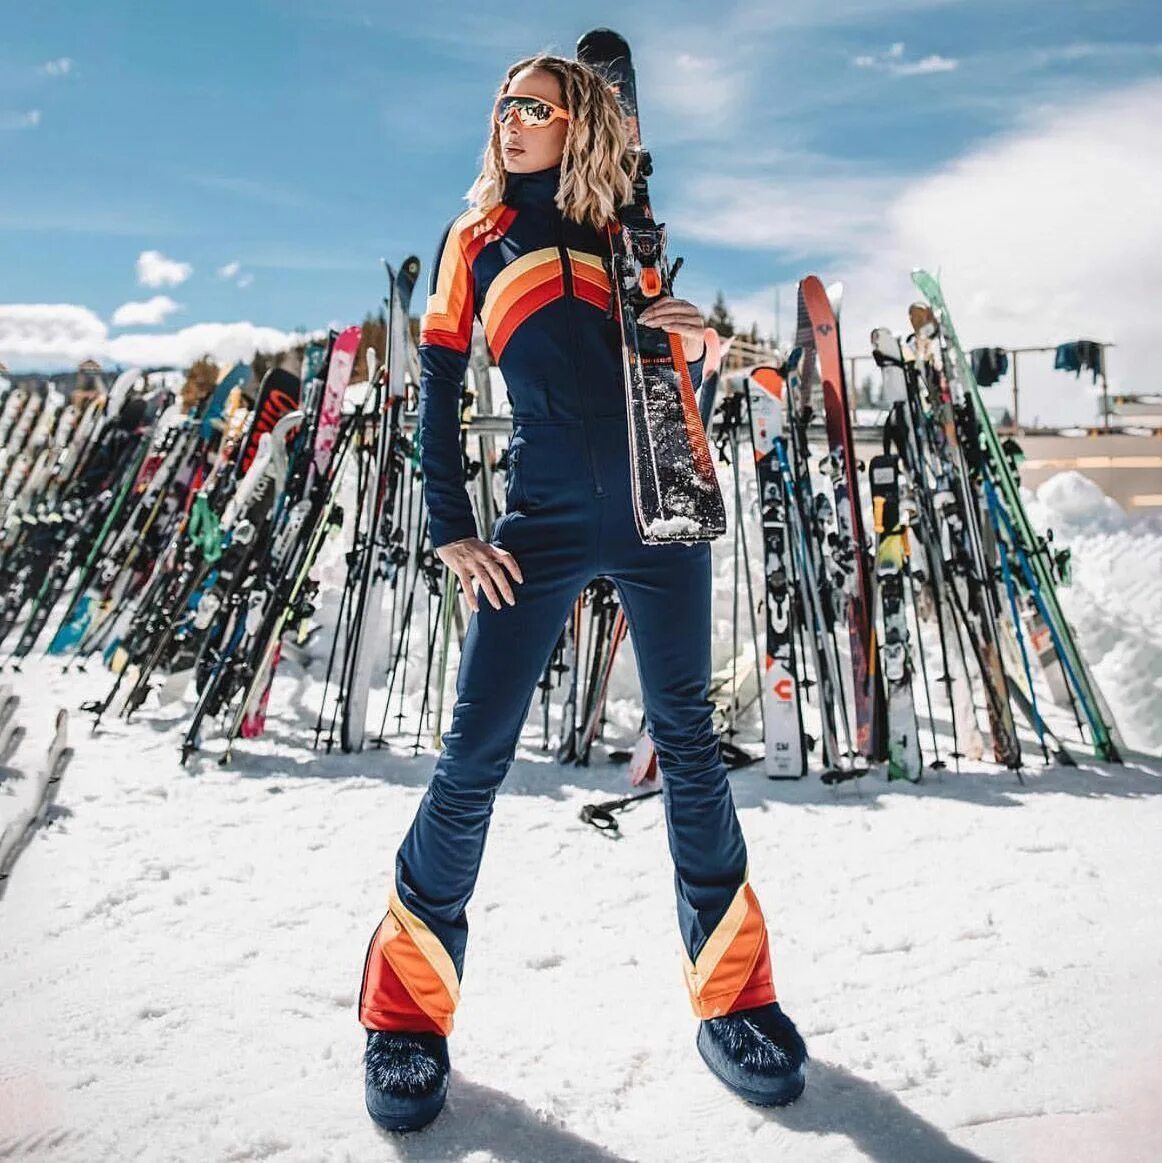 GSD Ski горнолыжный костюм. Комбинезон горнолыжный perfect moment. Фенди горнолыжный комбинезон горнолыжный. Ski одежда